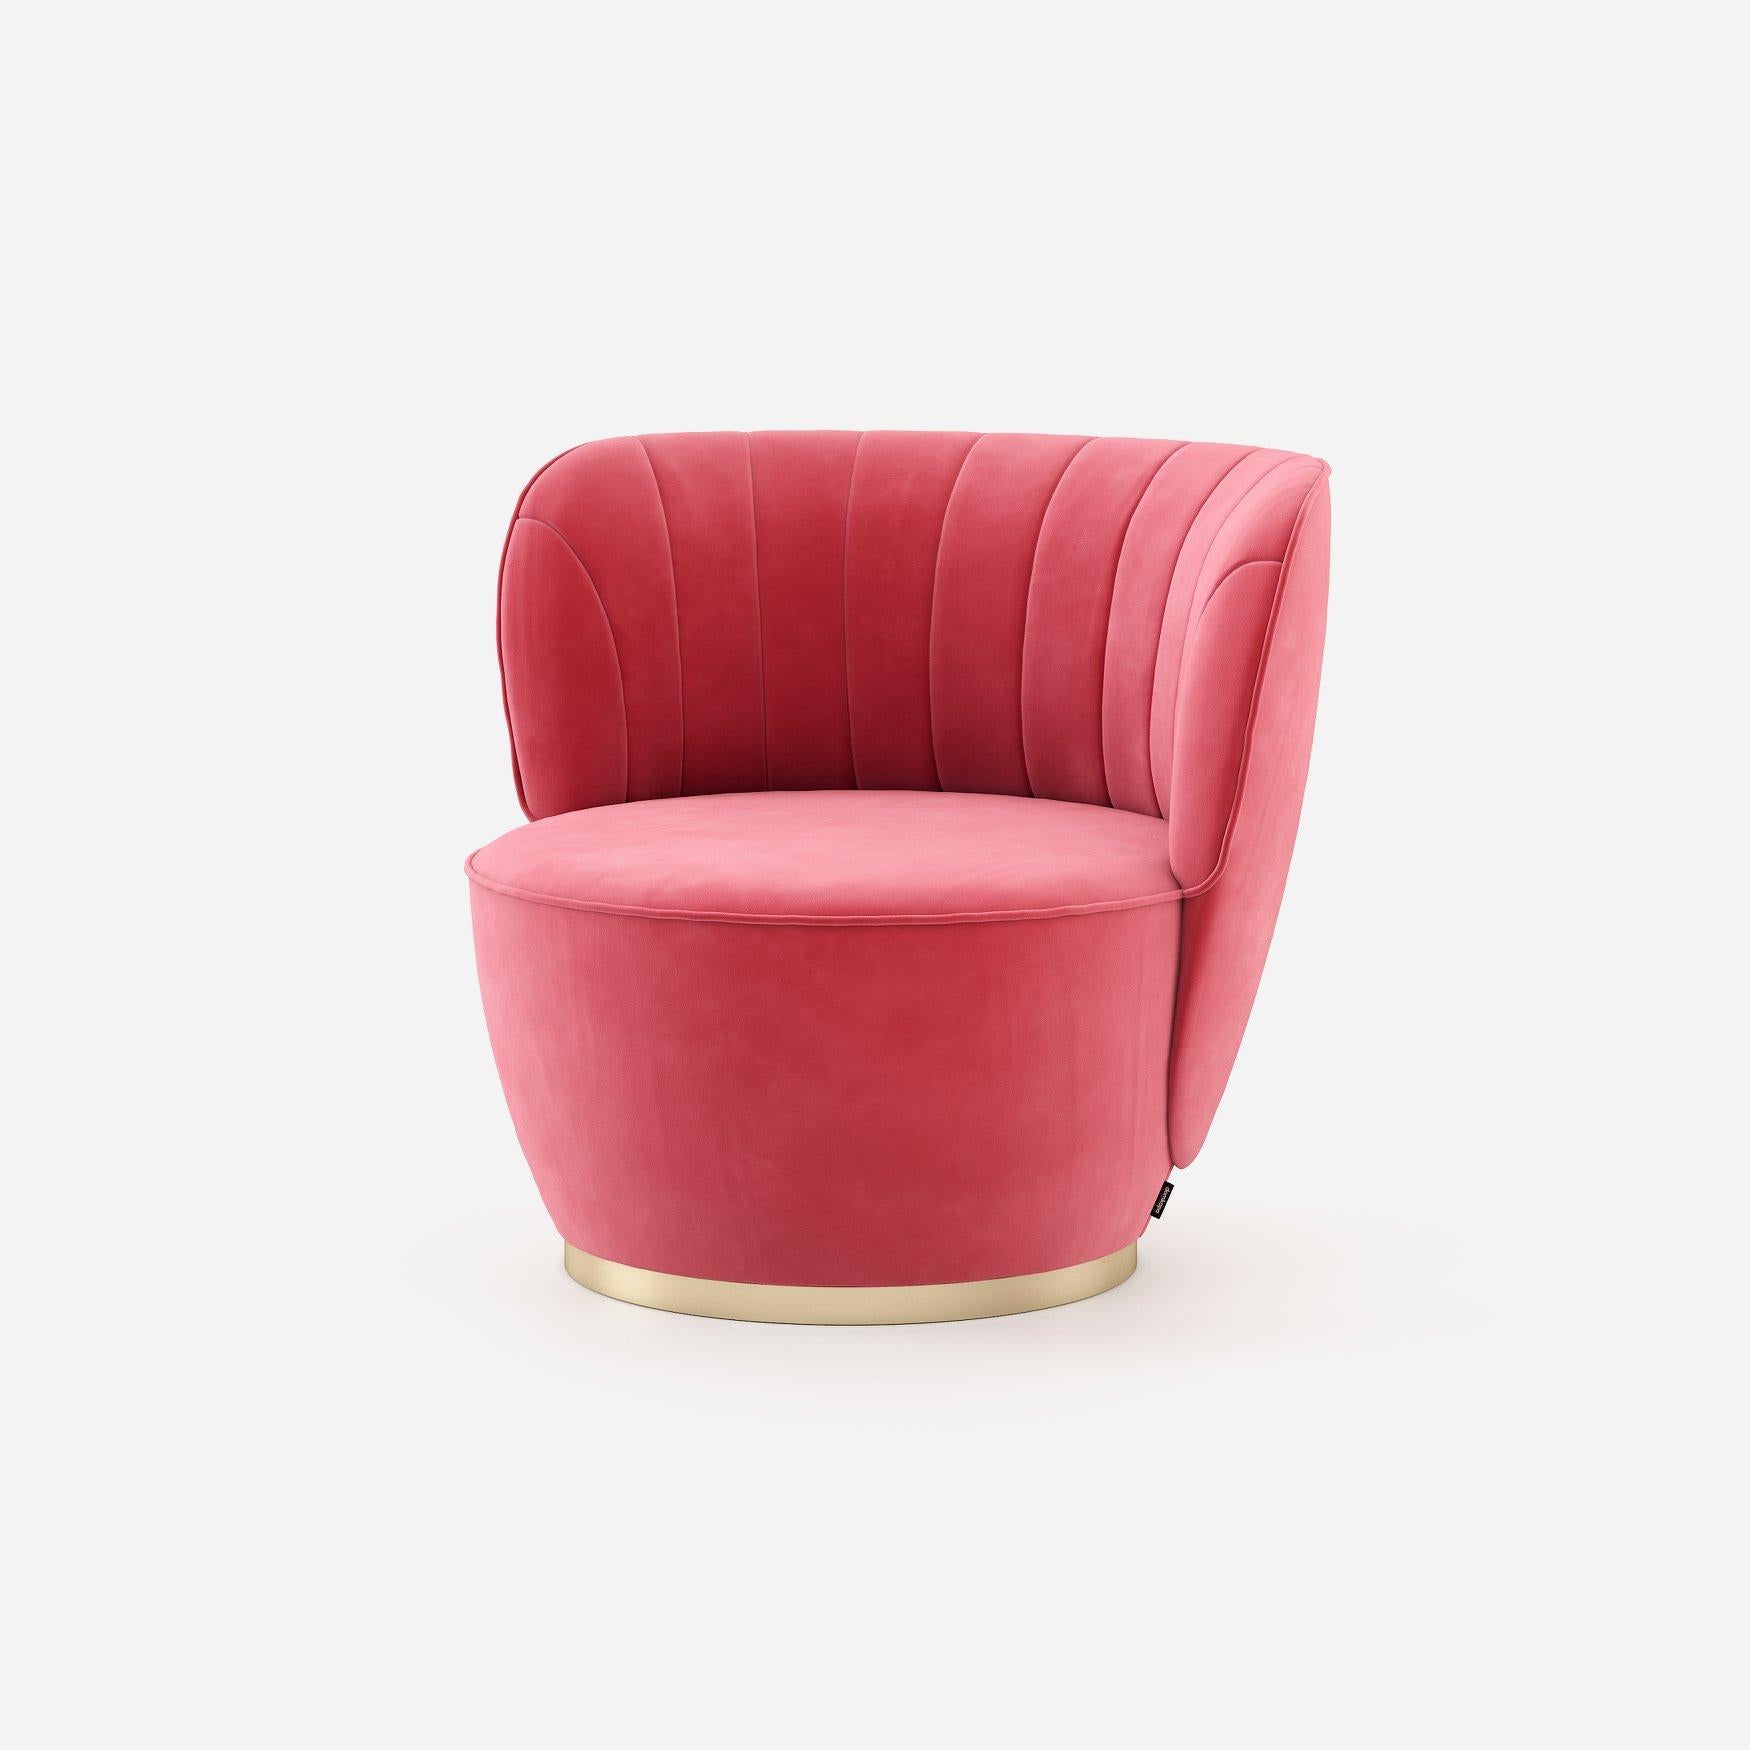 Ce fauteuil détient un langage exclusif pour son design particulier. Avec un dossier convexe profond, cette pièce présente une assise grande et ronde pour vous offrir tout le confort dont vous avez besoin. La partie intérieure du dos comprend